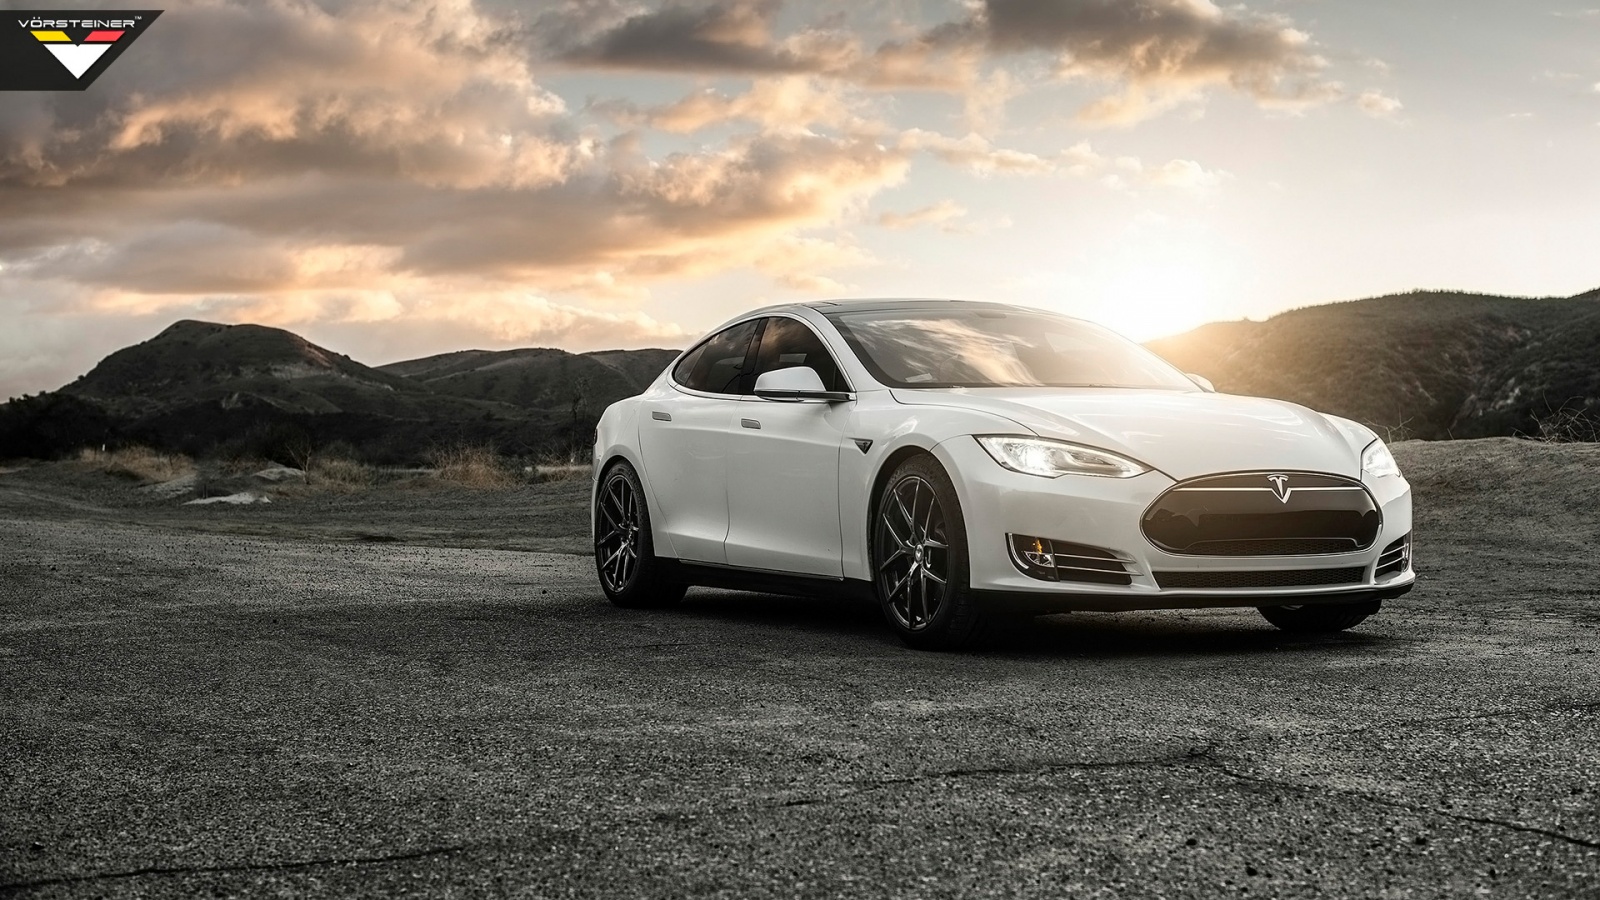 46+] Tesla Model S Wallpaper HD - WallpaperSafari